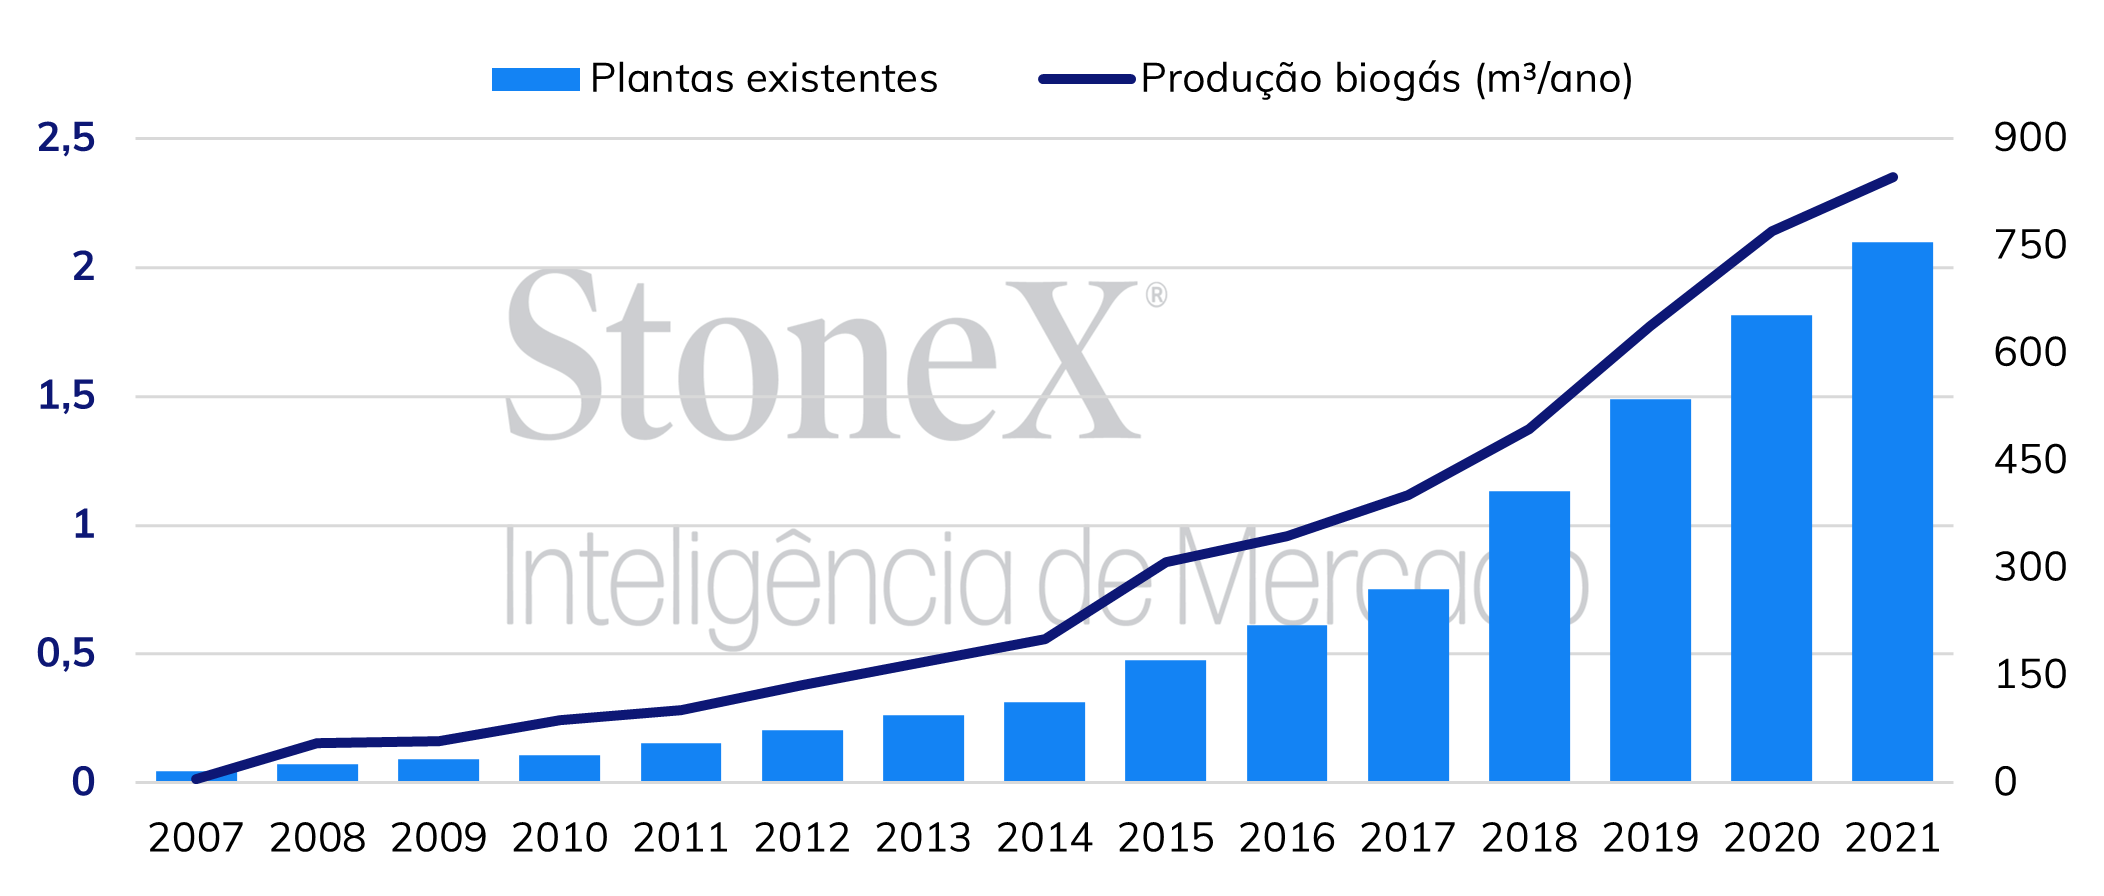 Produção de biogás e número de plantas existentes no Brasil